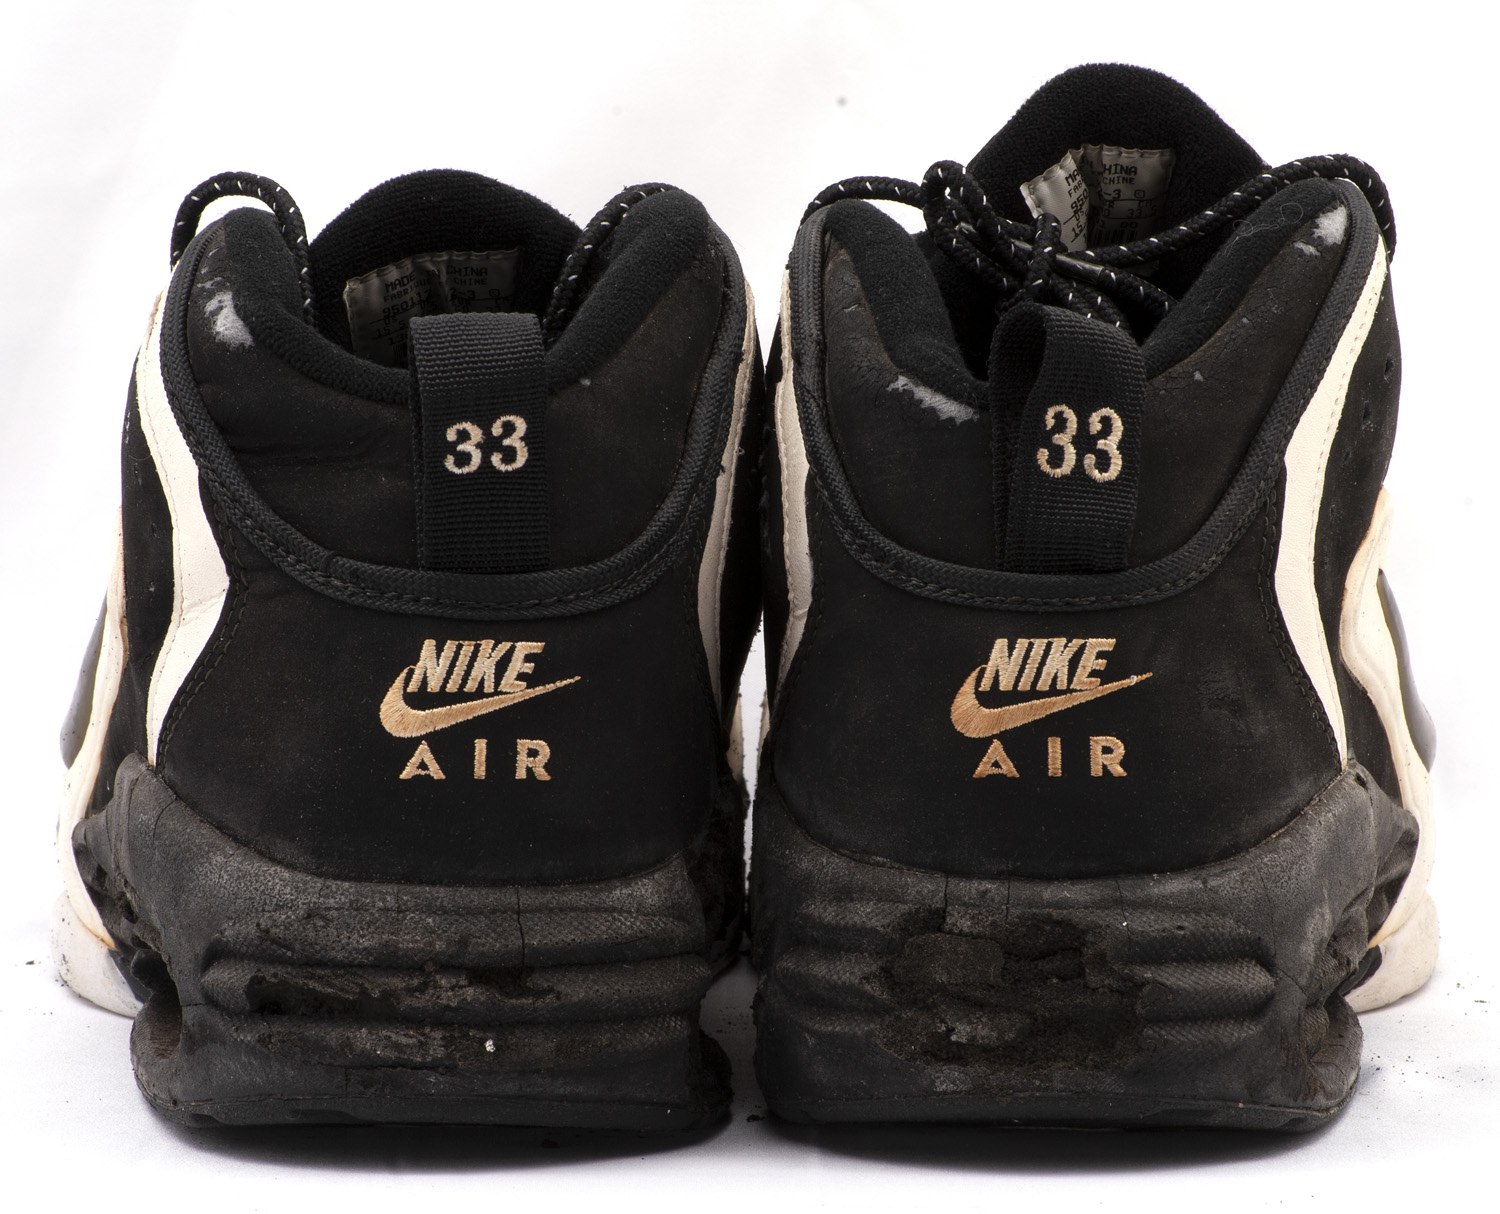 pippen shoes 1994